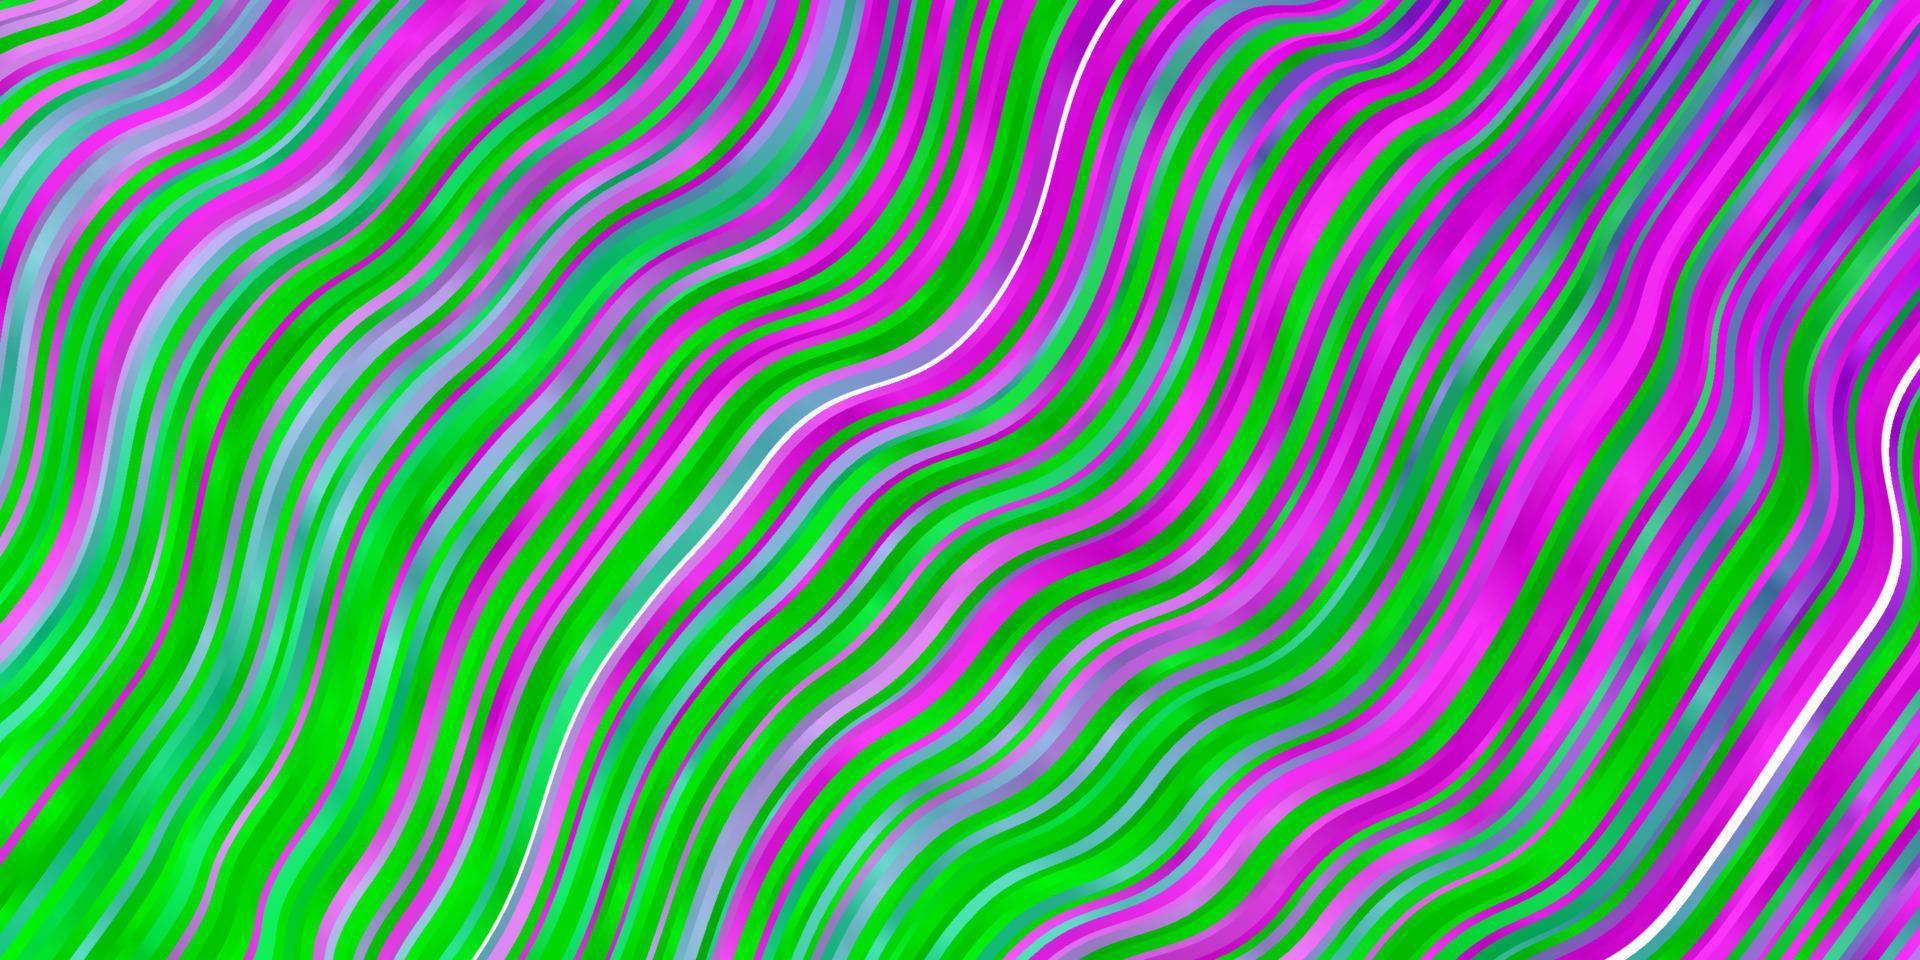 padrão de luz rosa, verde vetor com linhas irônicas.